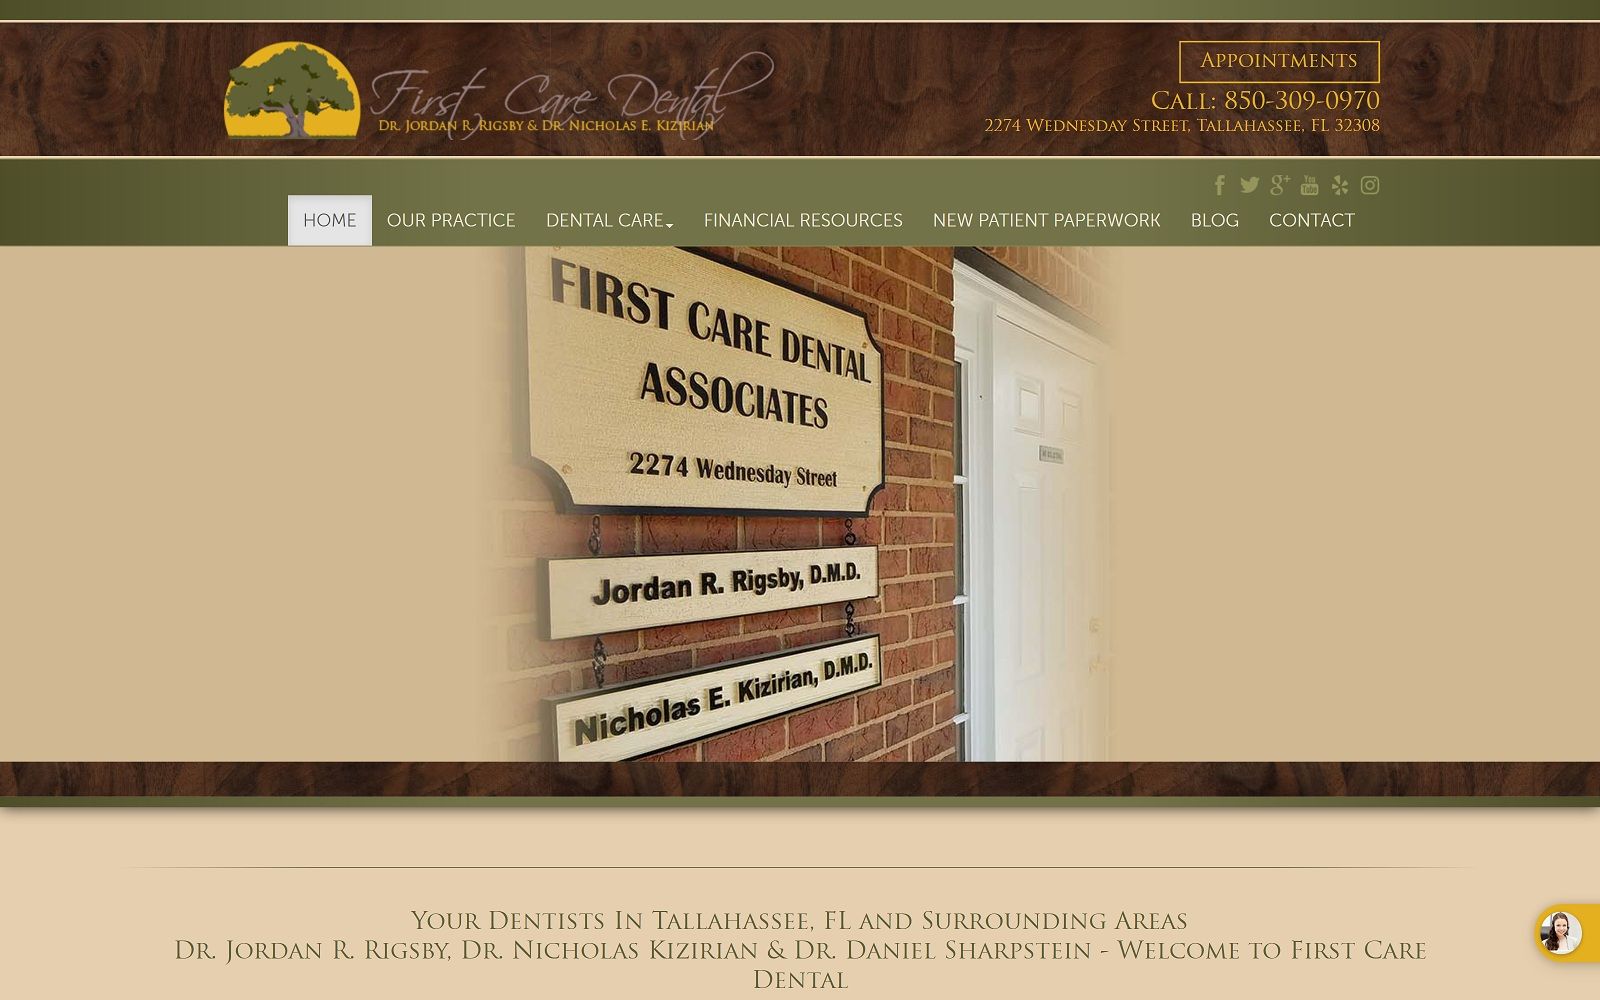 The screenshot of first care dental associates firstcaredental. Org website